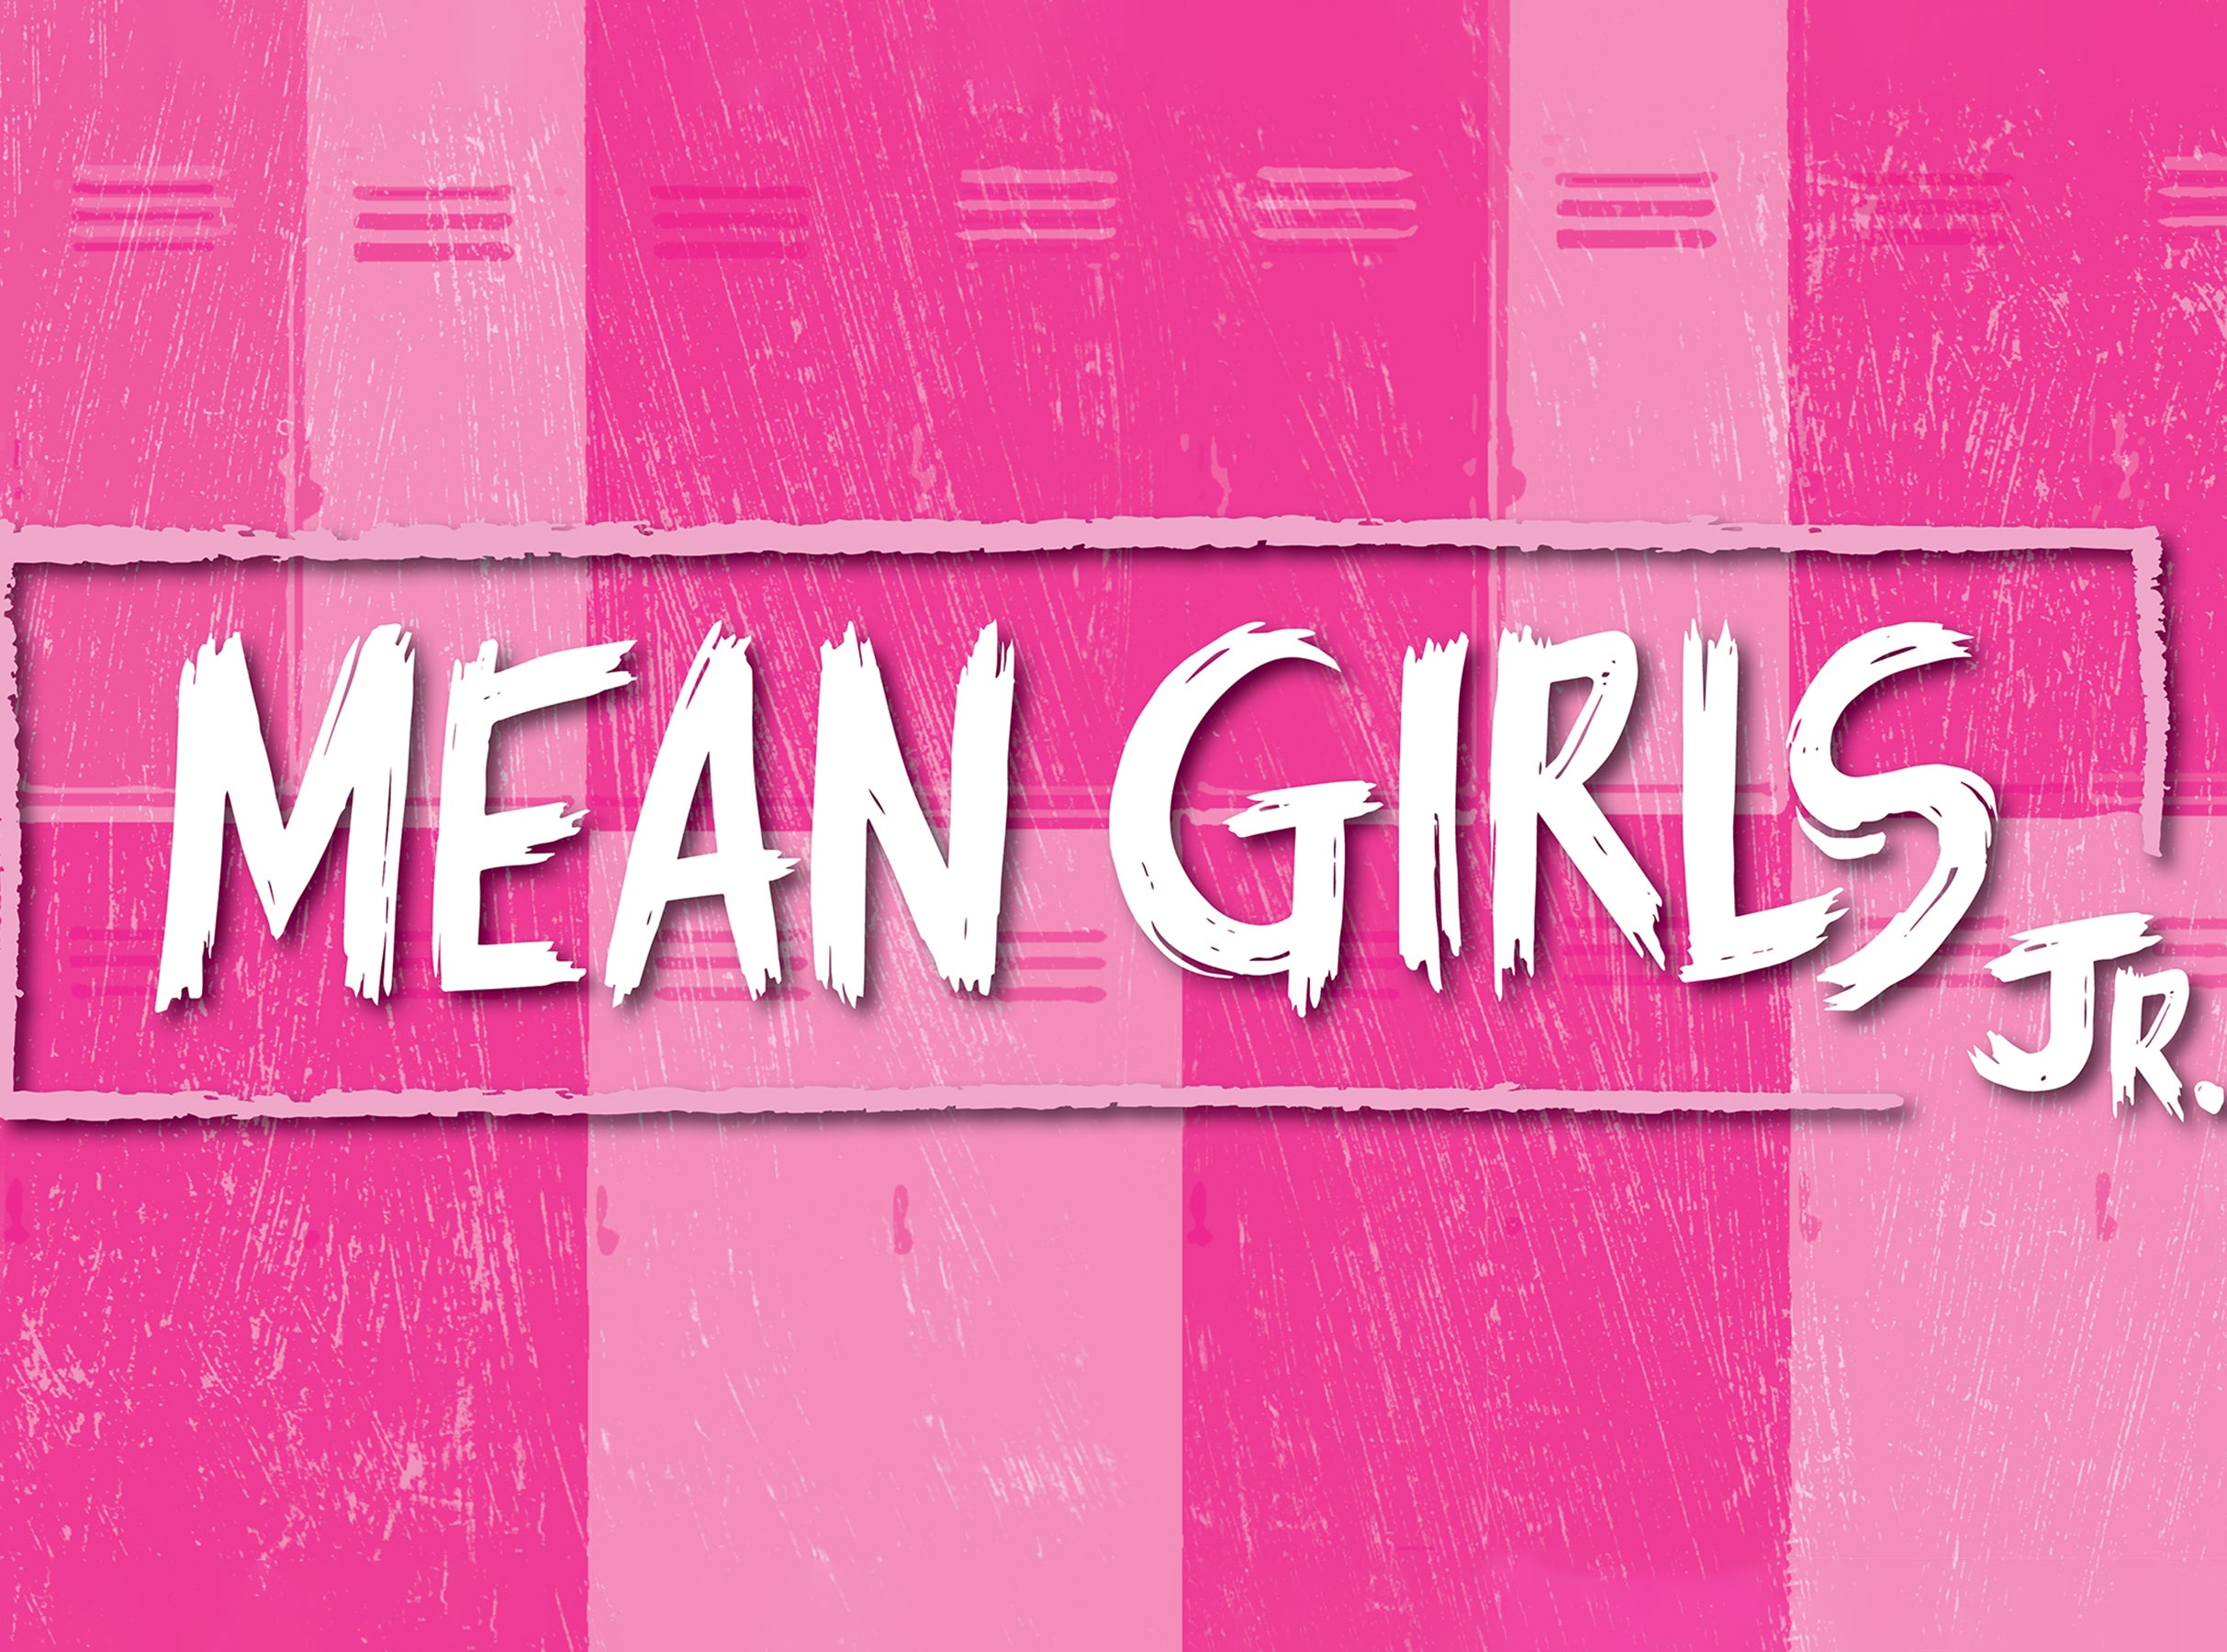 Mean Girls Jr. presale information on freepresalepasswords.com